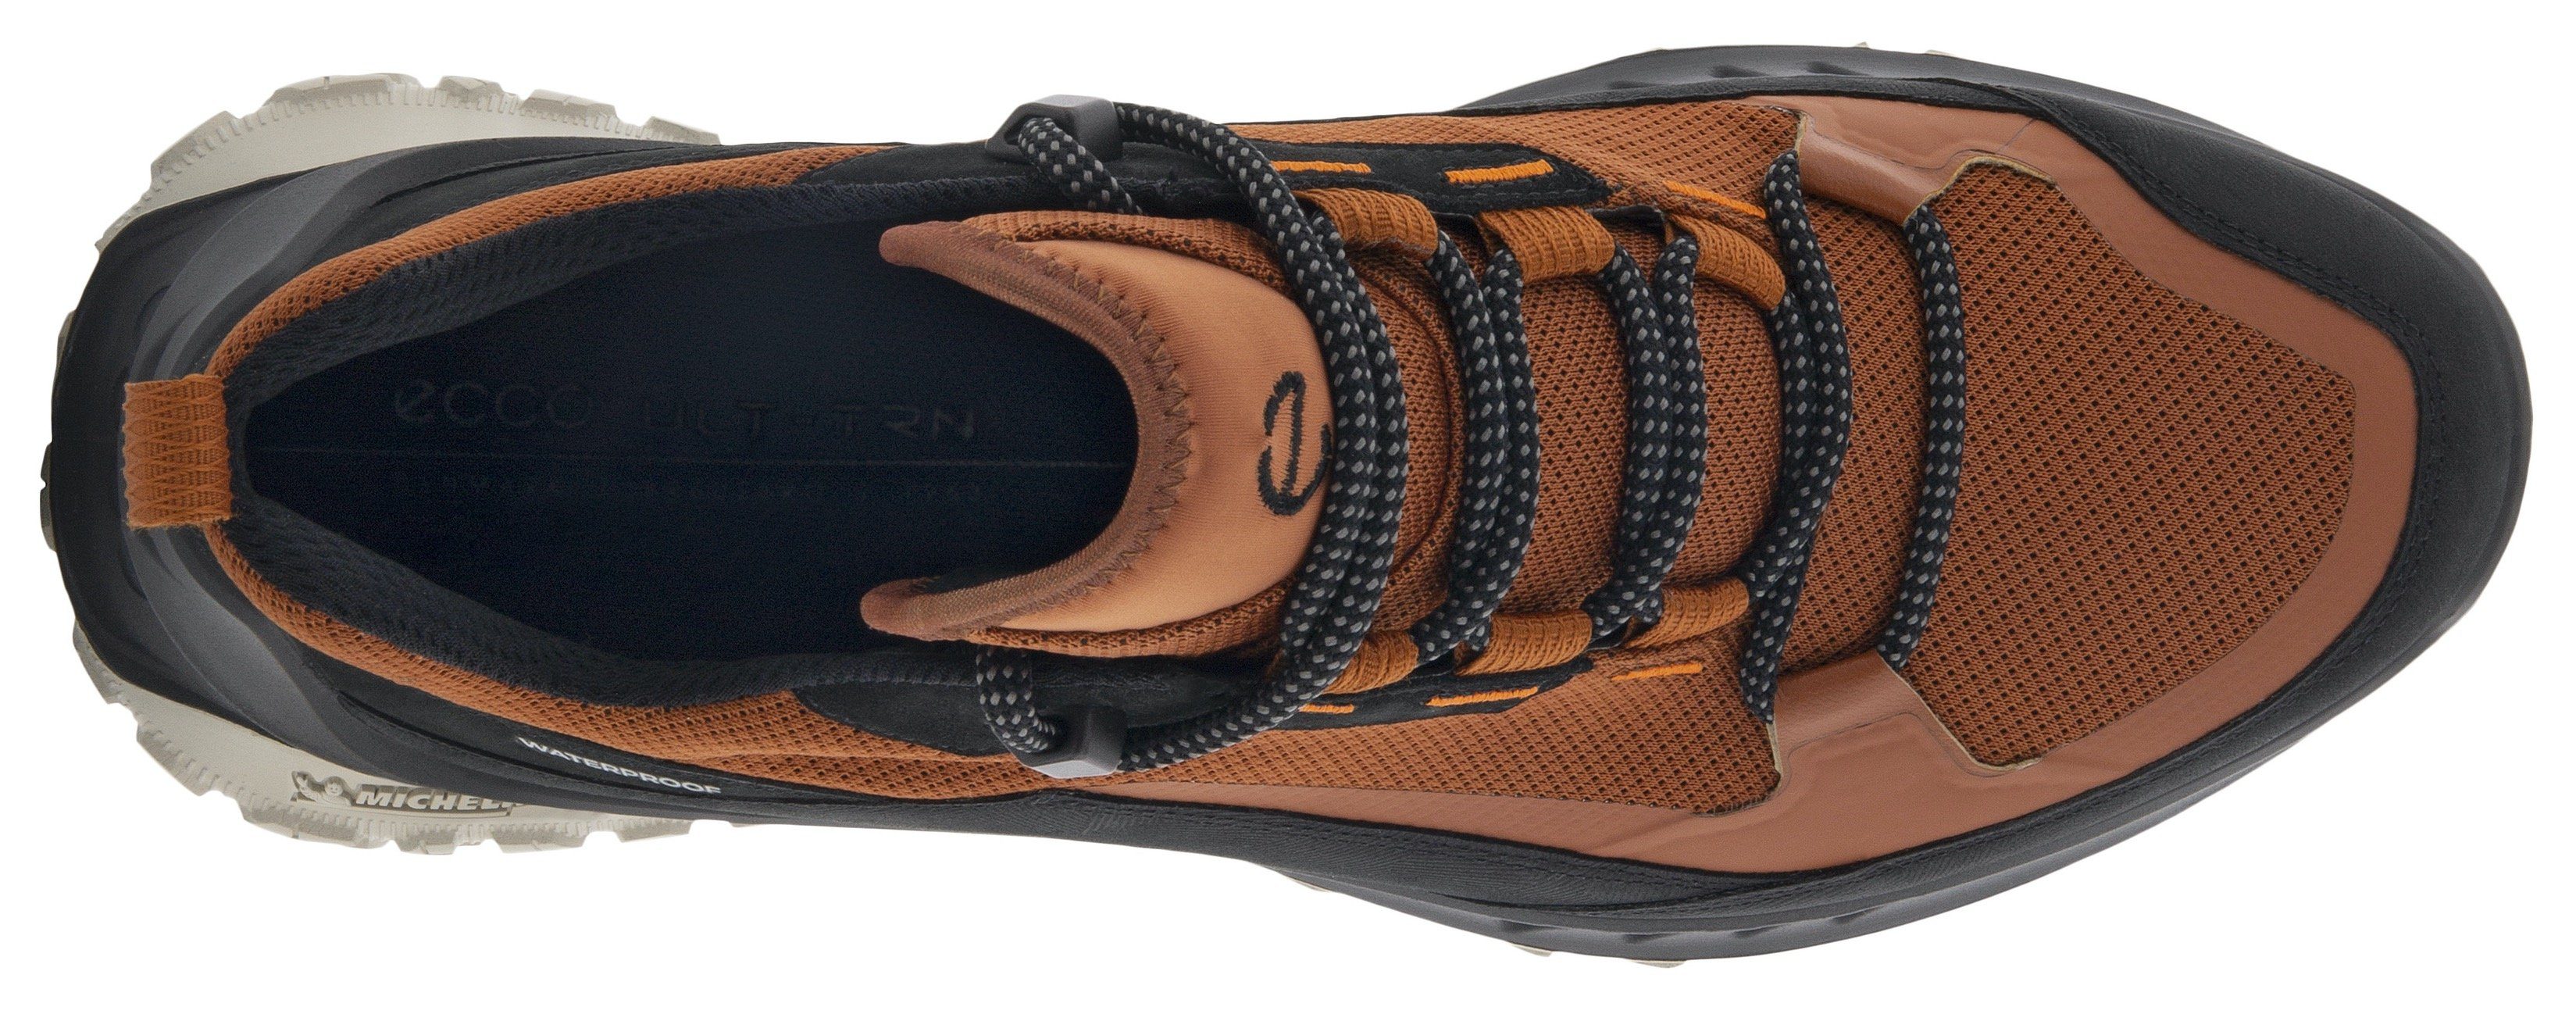 Sneaker cognac-schwarz M Ecco ULT-TRN mit Michelin-Technologie Laufsohle sportive